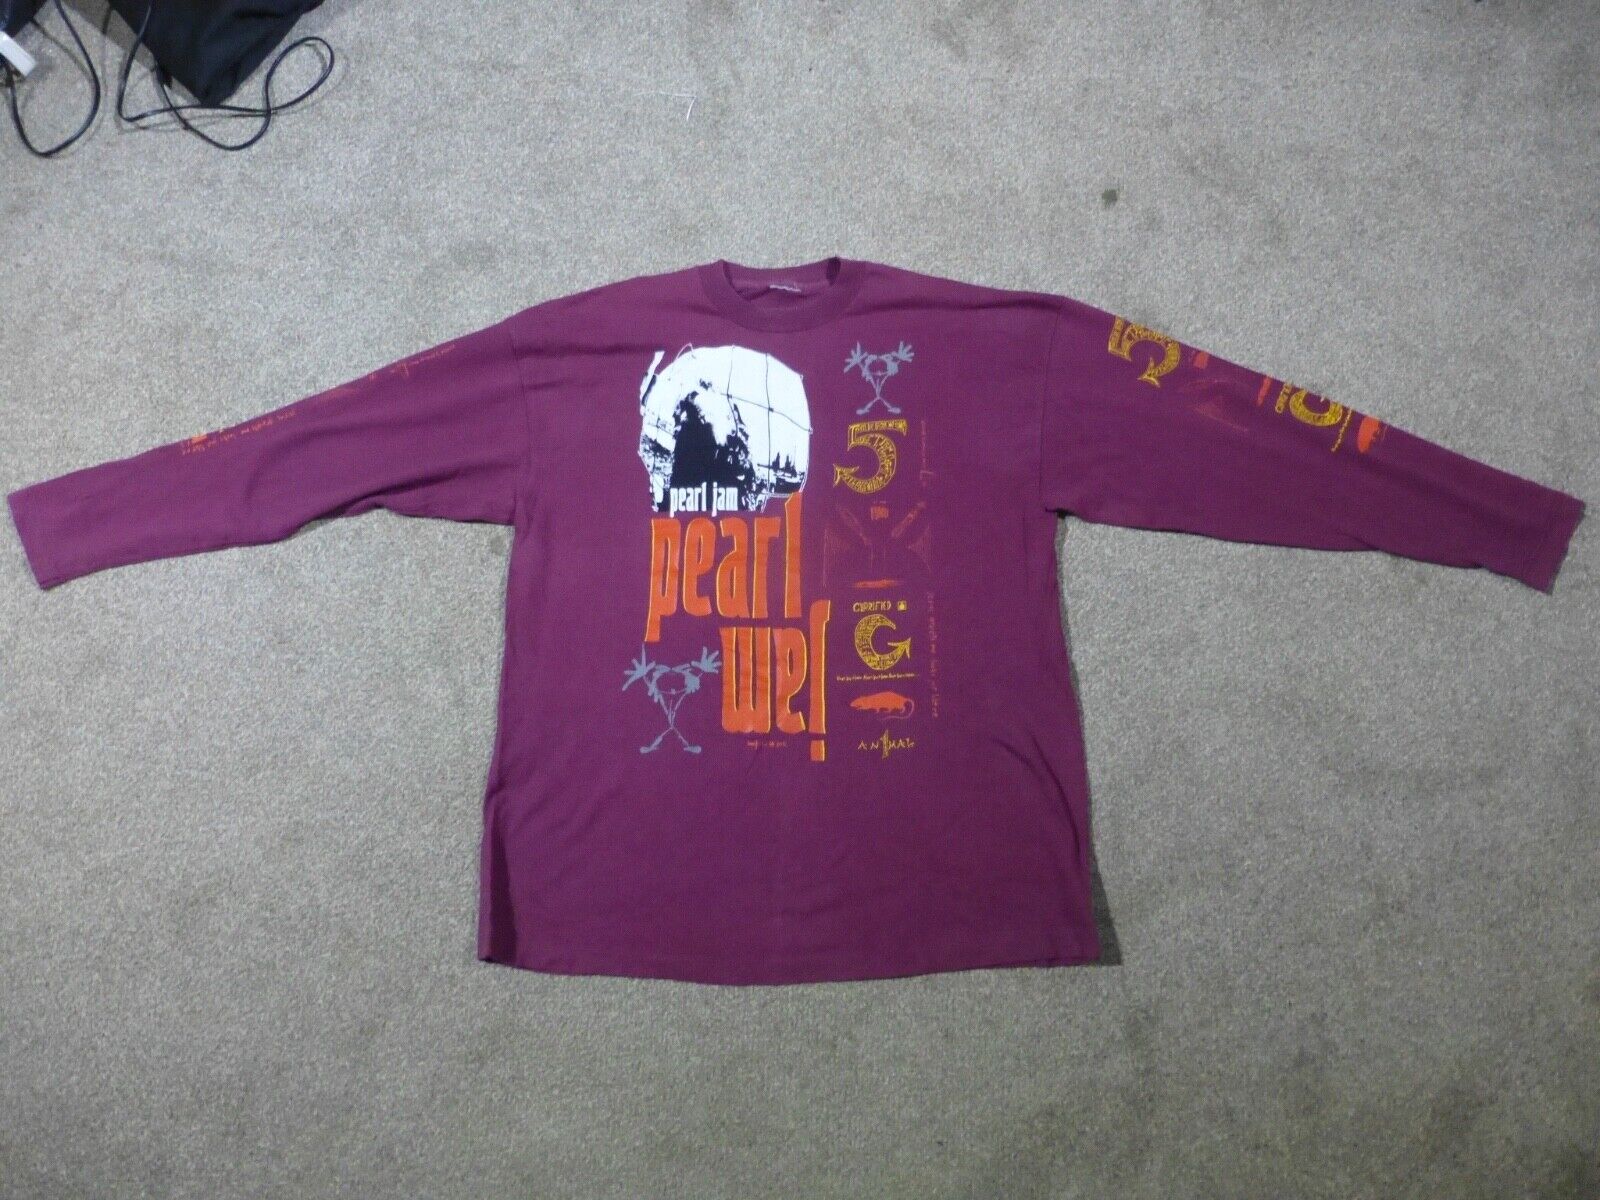 Pearl Jam Vs versus vintage cotton sweatshirt size XL In New condition Ten